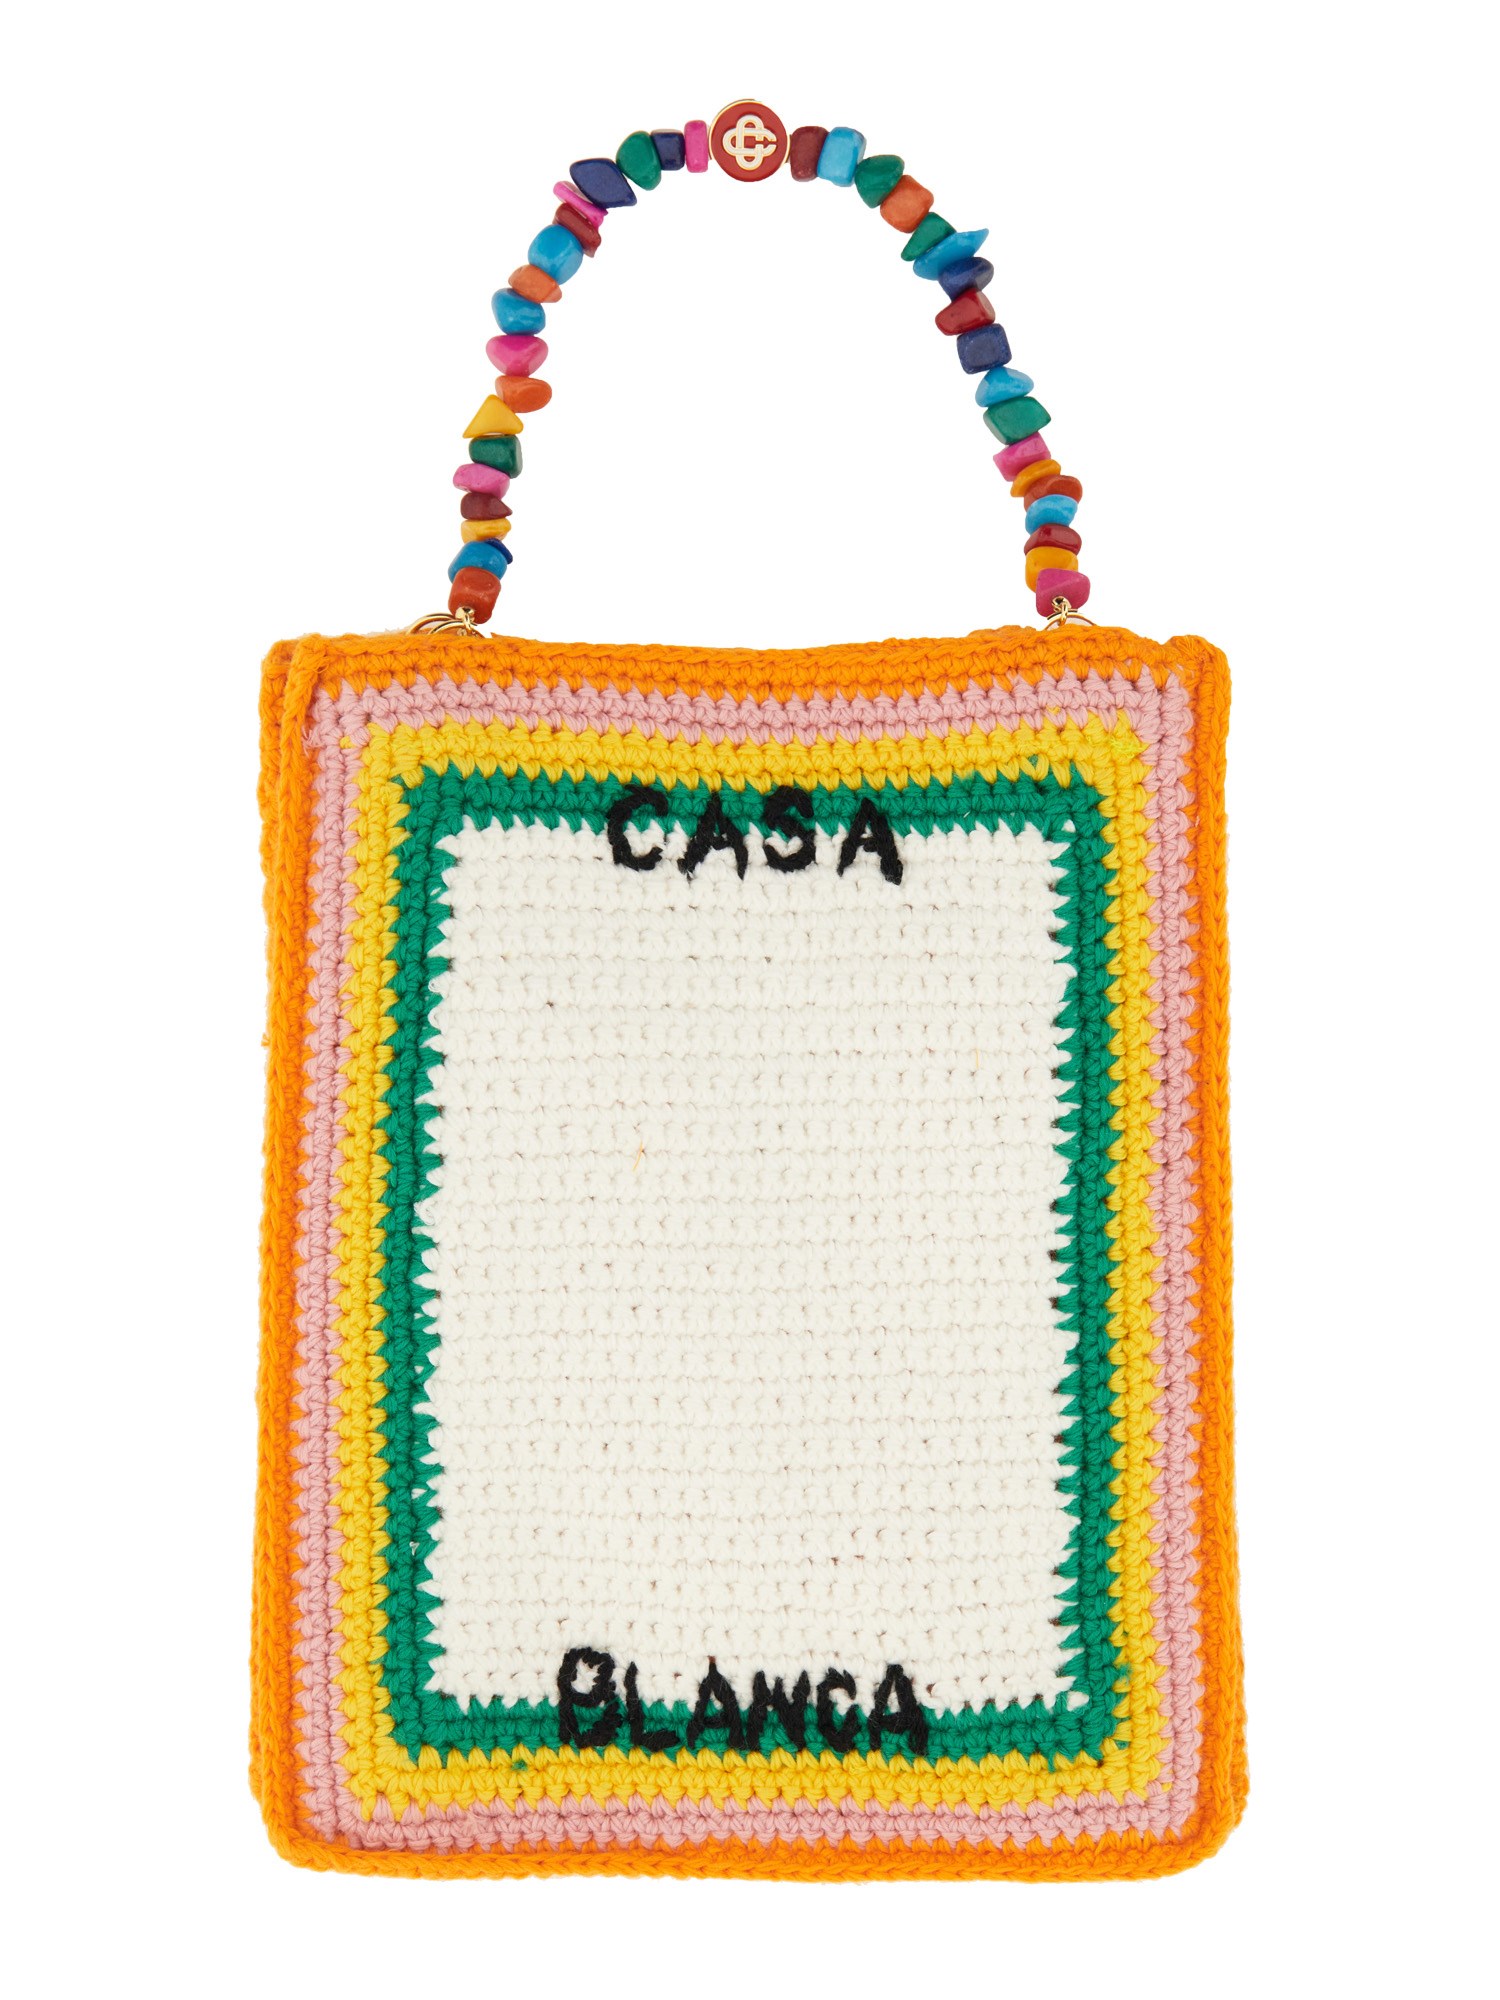 Casablanca casablanca crochet bag